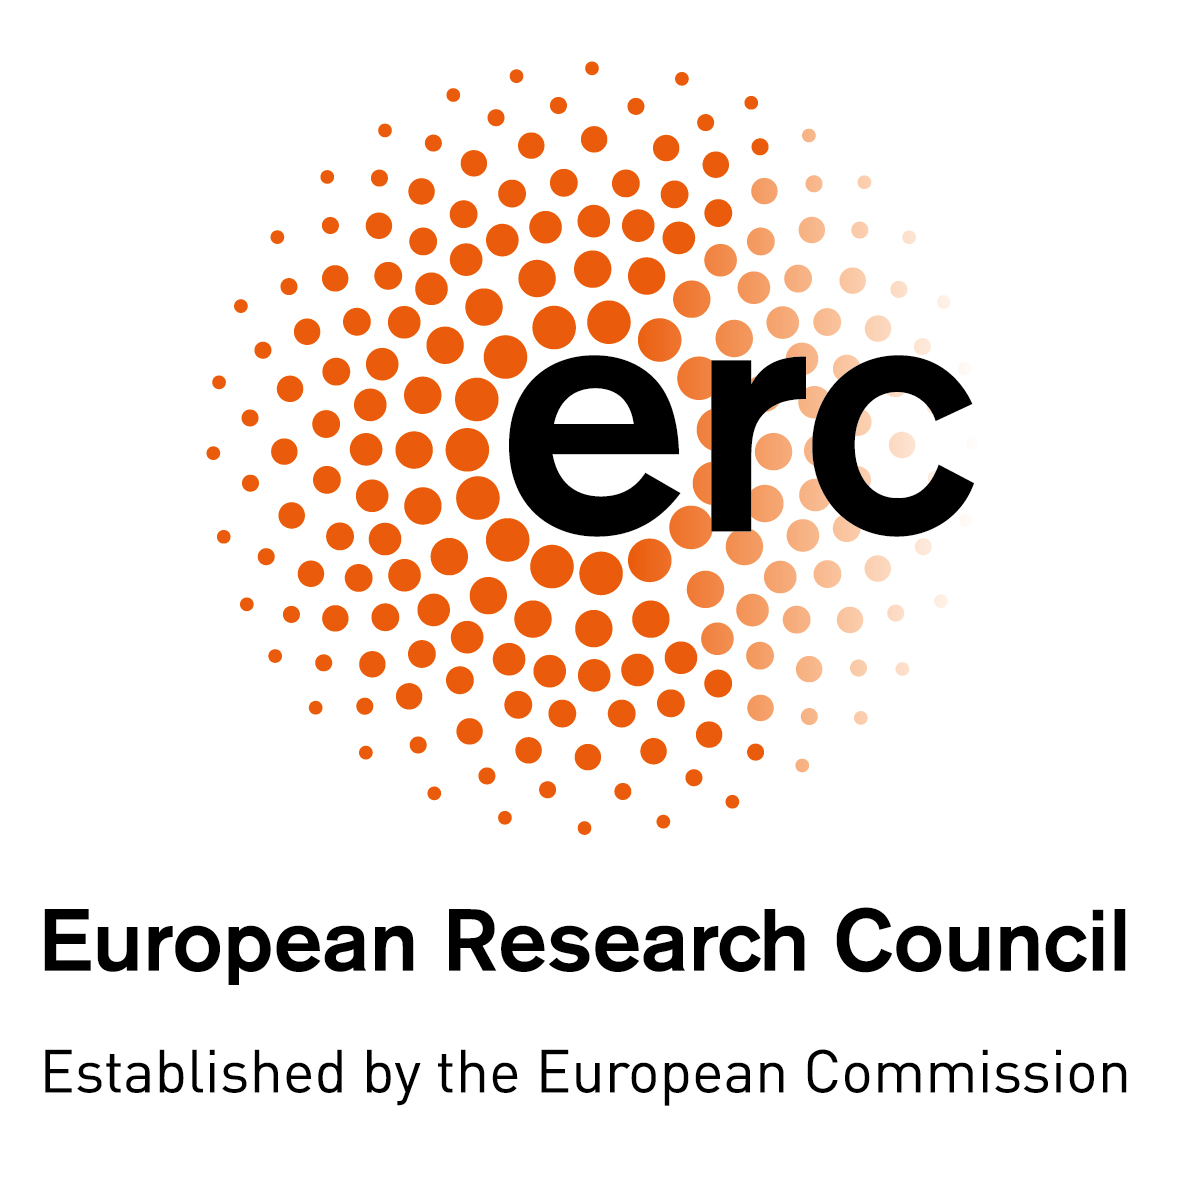 Η Επιτροπή αναζητά υποψηφίους για το Επιστημονικό Συμβούλιο του Ευρωπαϊκού Συμβουλίου Έρευνας (ERC)